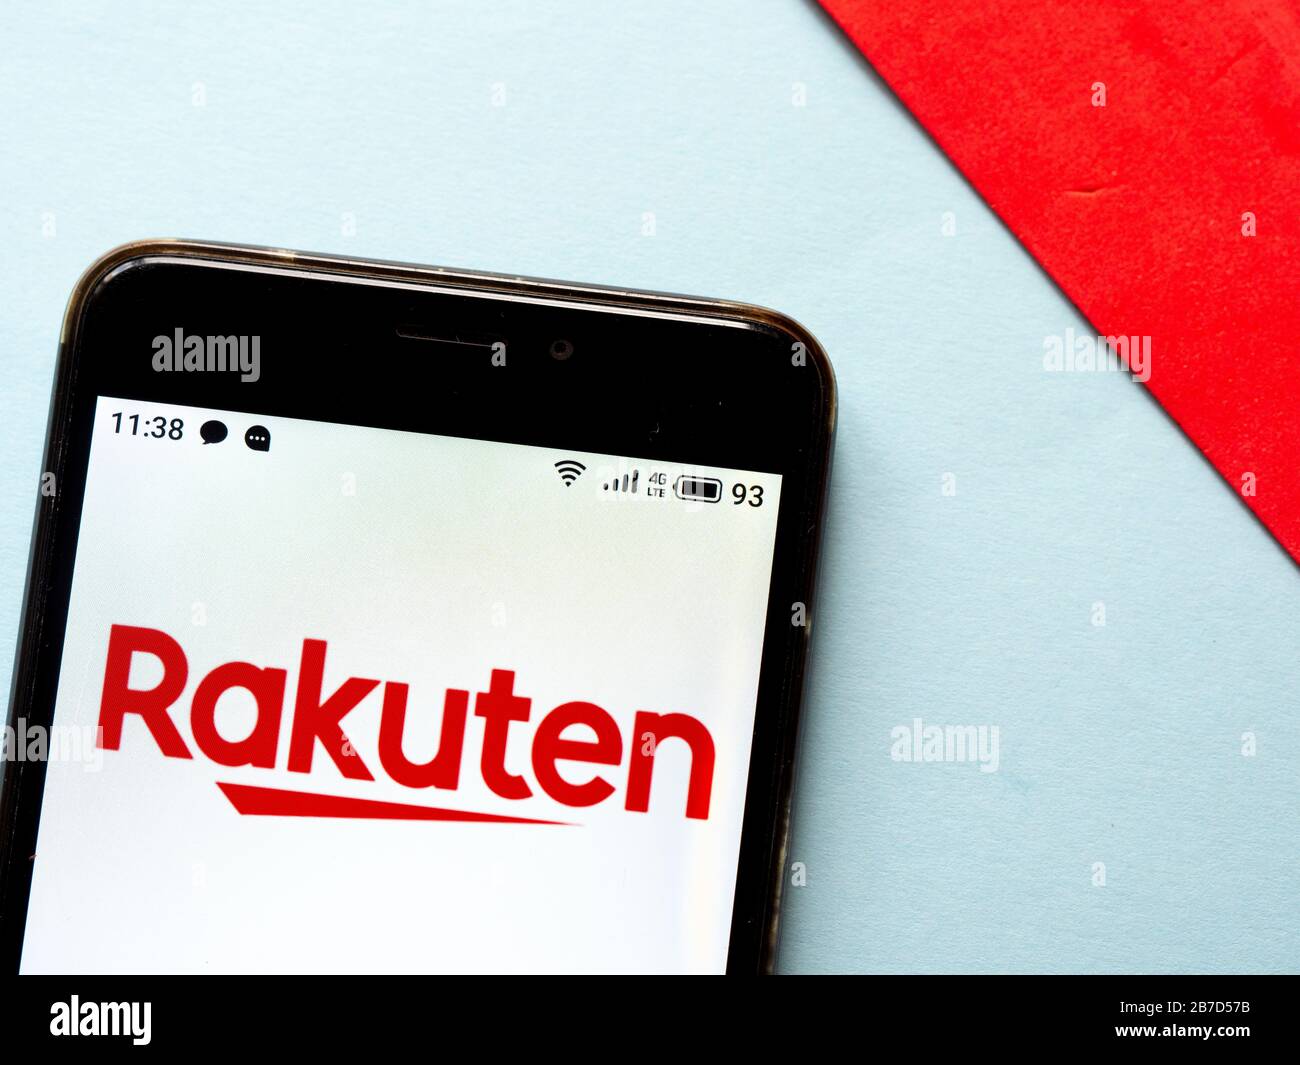 In questa illustrazione fotografica viene visualizzato il logo Rakuten visualizzato sullo smartphone. Foto Stock